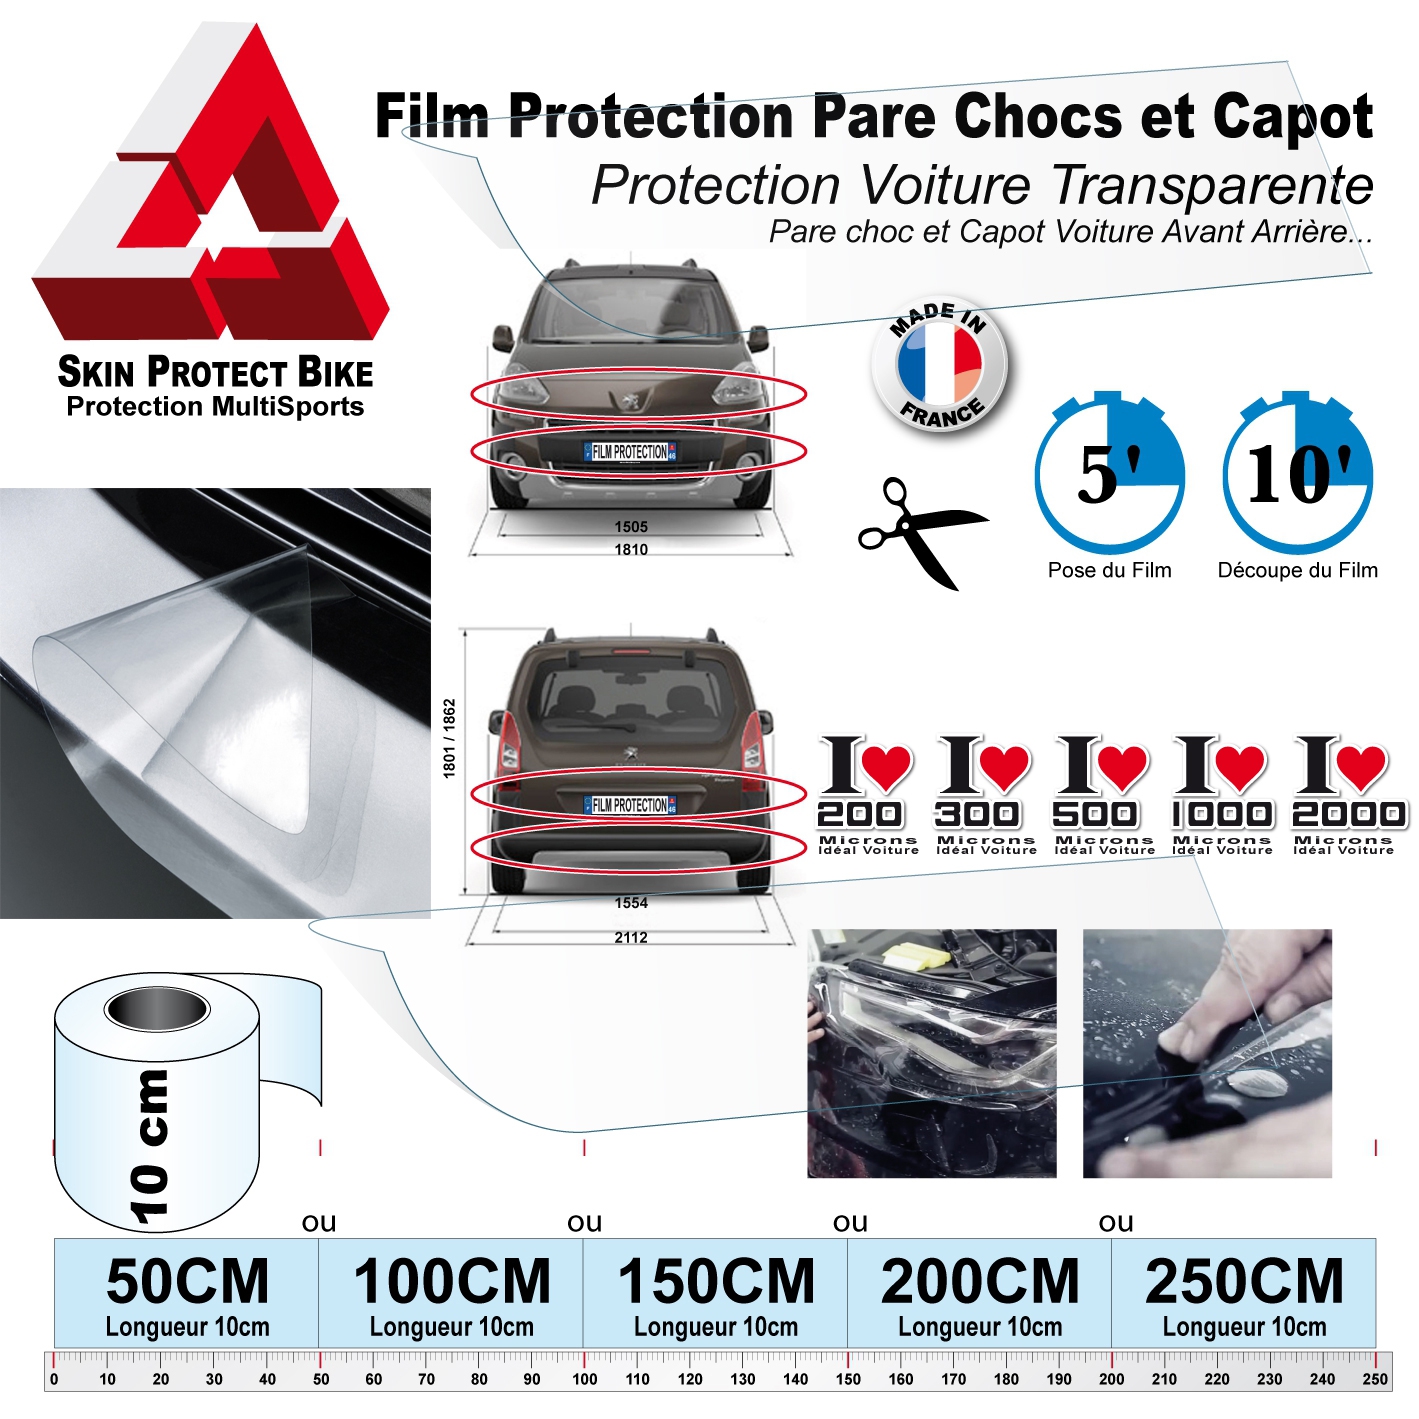 Film Protection Transparent Pare Choc en rouleau